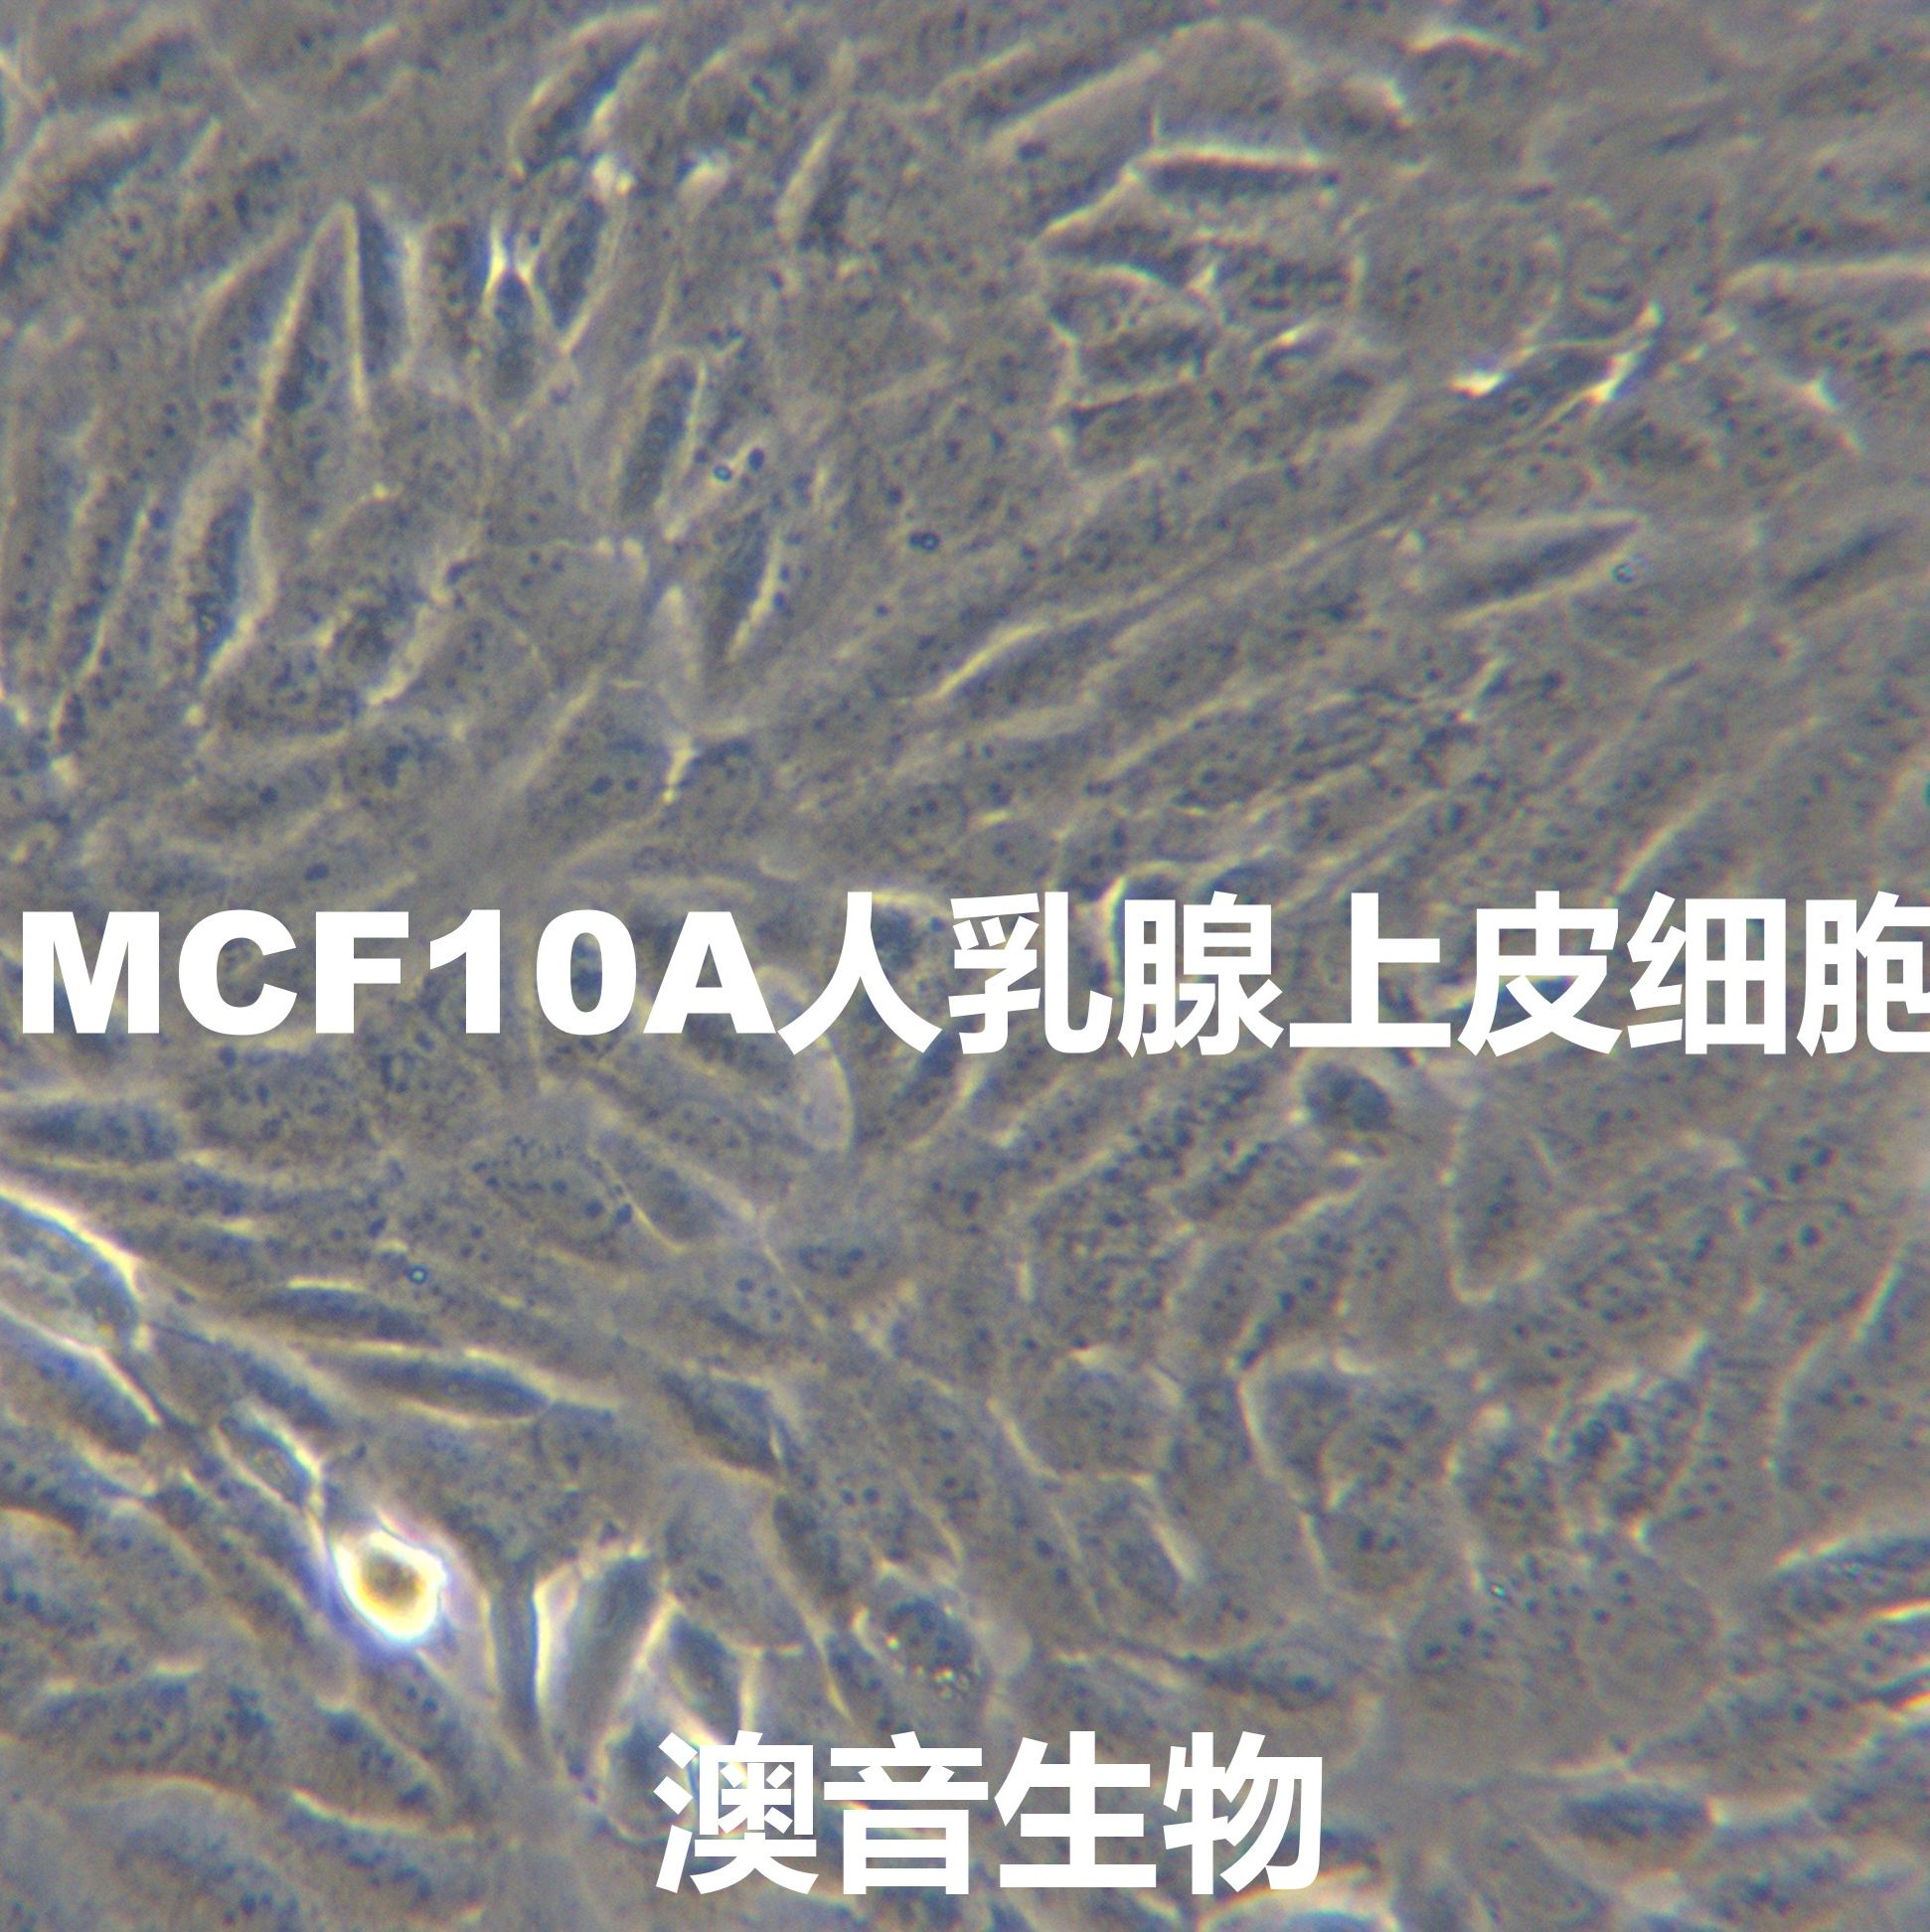 MCF-10A【MCF 10A; MCF.10A; MCF10A; MCF10-A; MCF10a】人乳腺上皮细胞